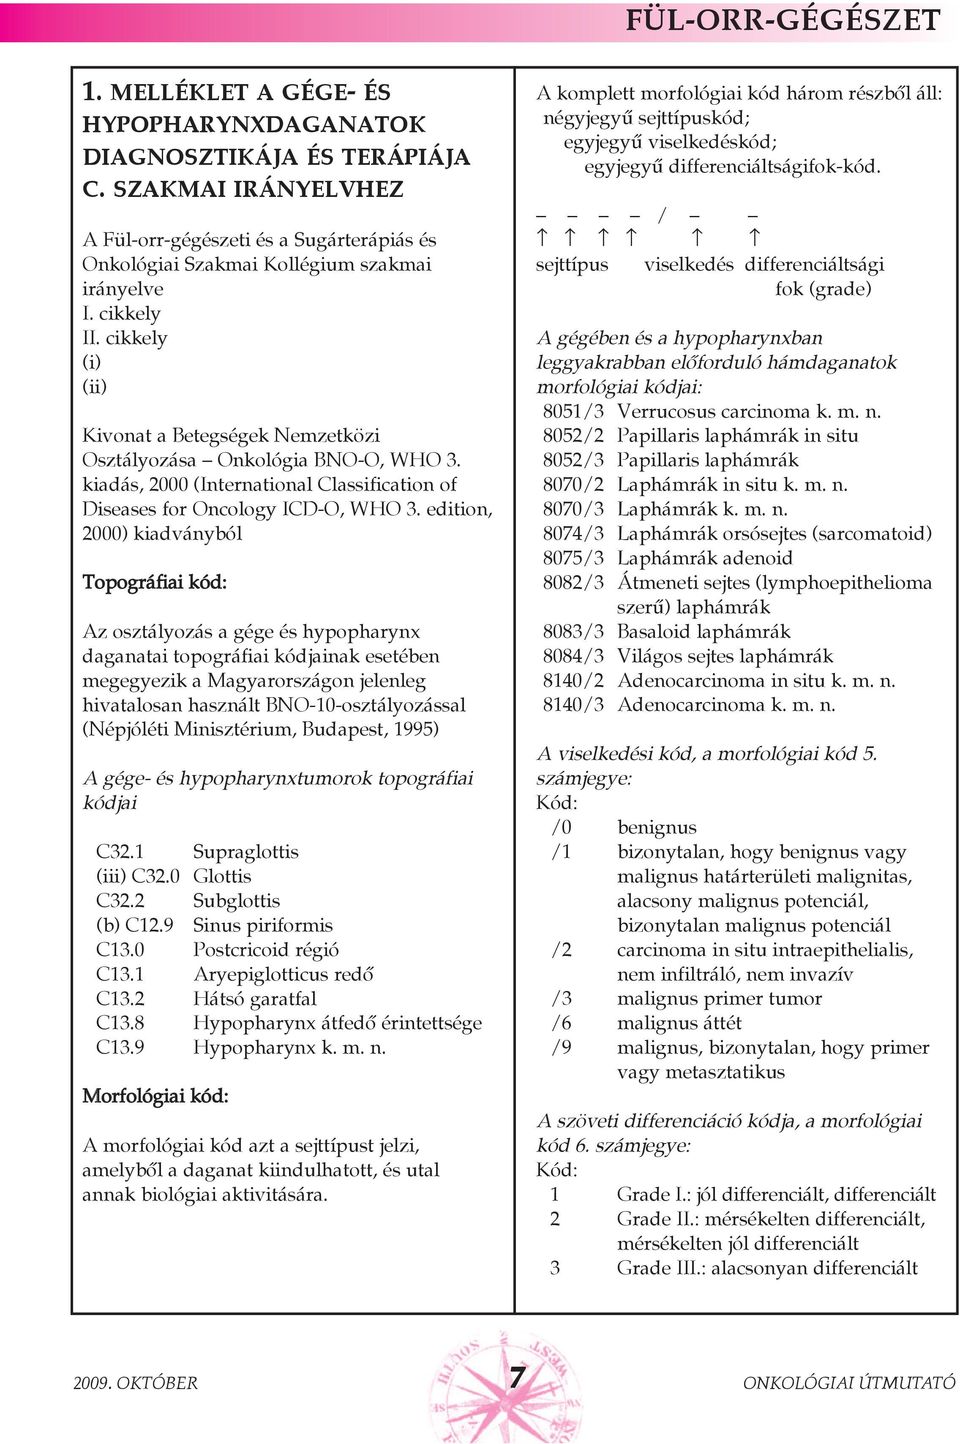 edition, 2000) kiadványból Topográfiai kód: Az osztályozás a gége és hypopharynx daganatai topográfiai kódjainak esetében megegyezik a Magyarországon jelenleg hivatalosan használt